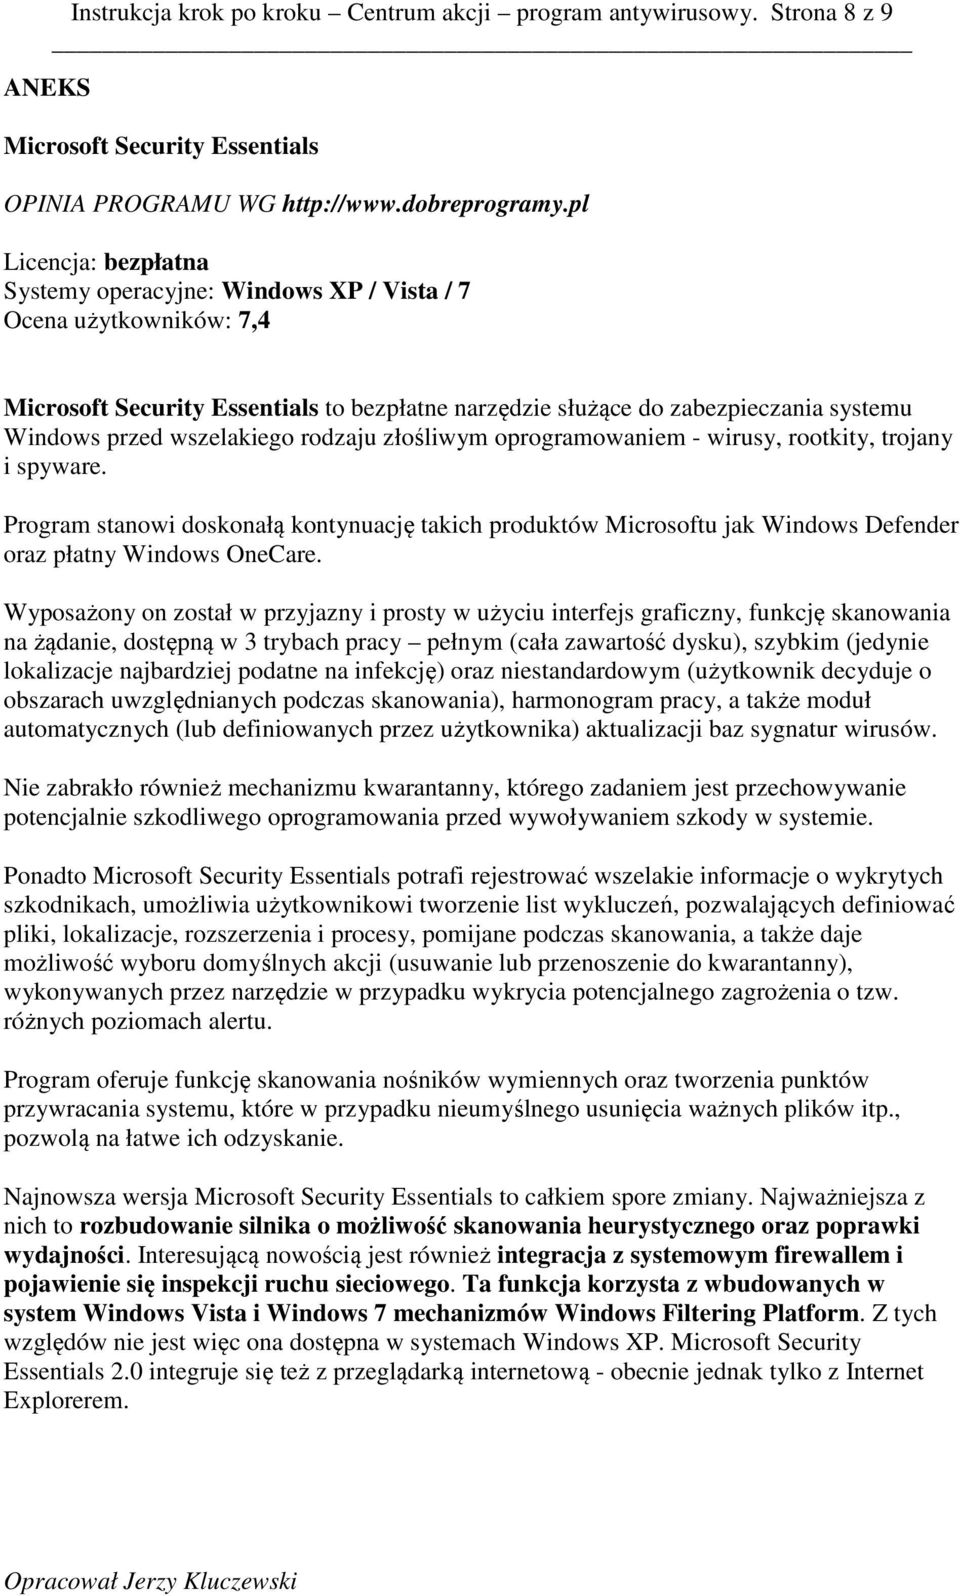 wszelakiego rodzaju złośliwym oprogramowaniem - wirusy, rootkity, trojany i spyware. Program stanowi doskonałą kontynuację takich produktów Microsoftu jak Windows Defender oraz płatny Windows OneCare.